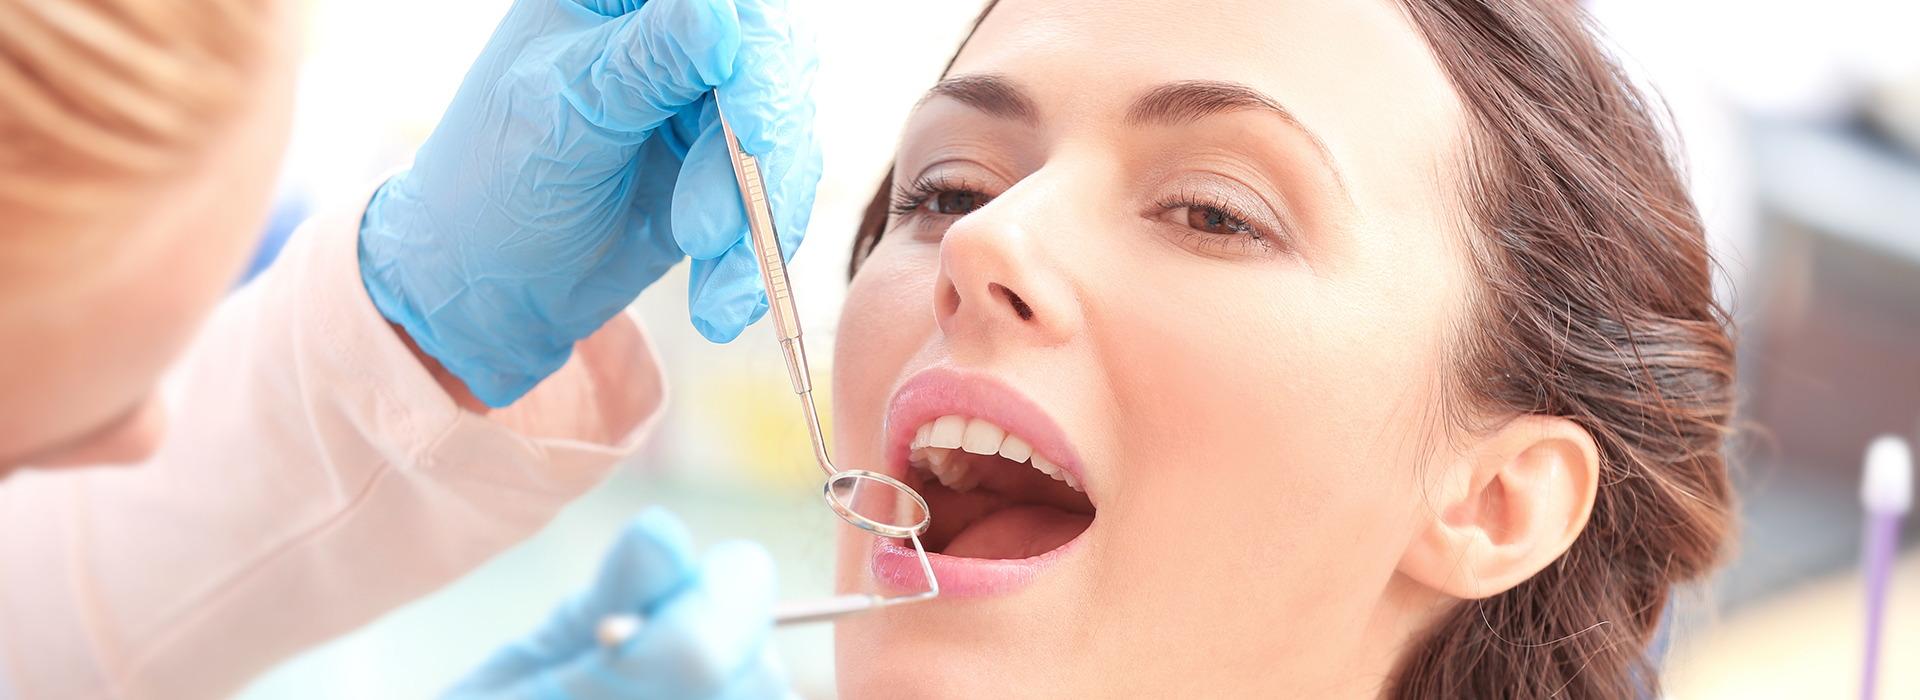 1Smile Dental | Oral Cancer Screening, Dentures and Sedation Dentistry